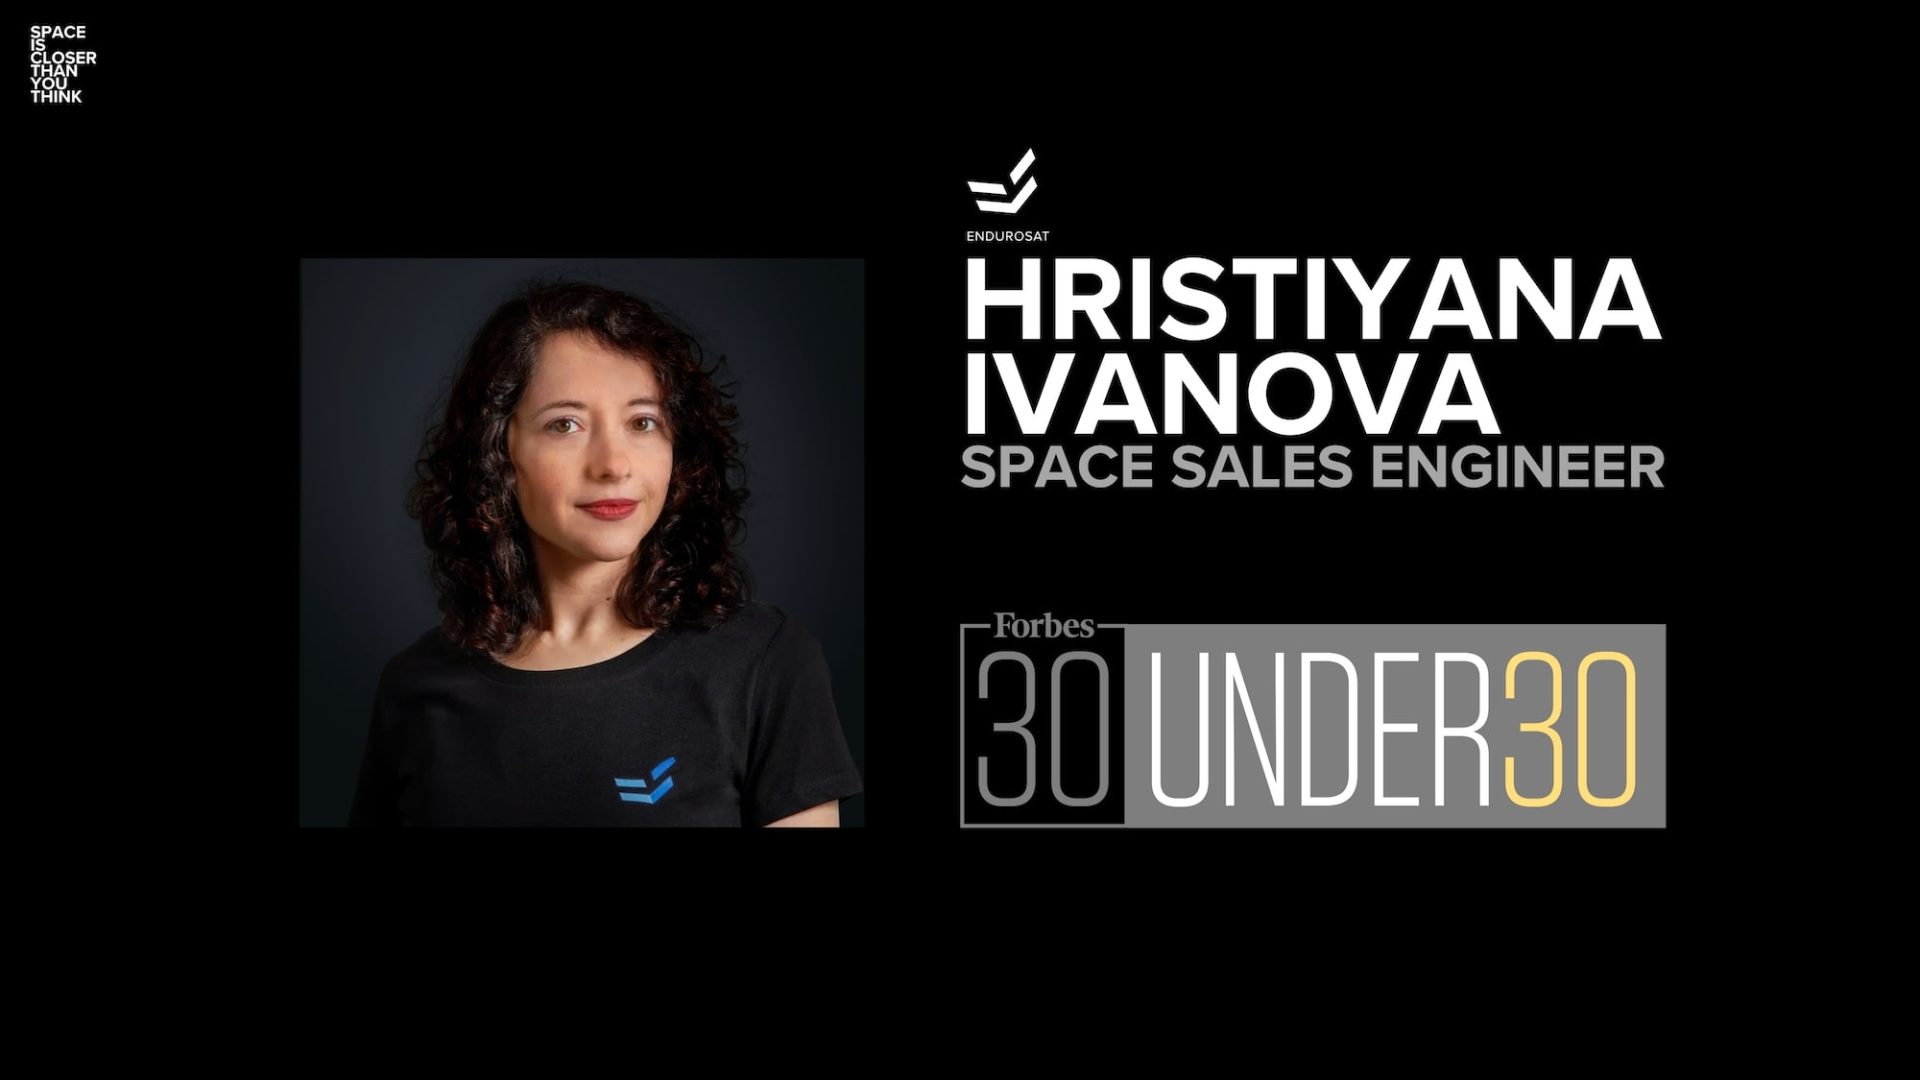 HRISTIYANA IVANOVA forbes 30 under 30